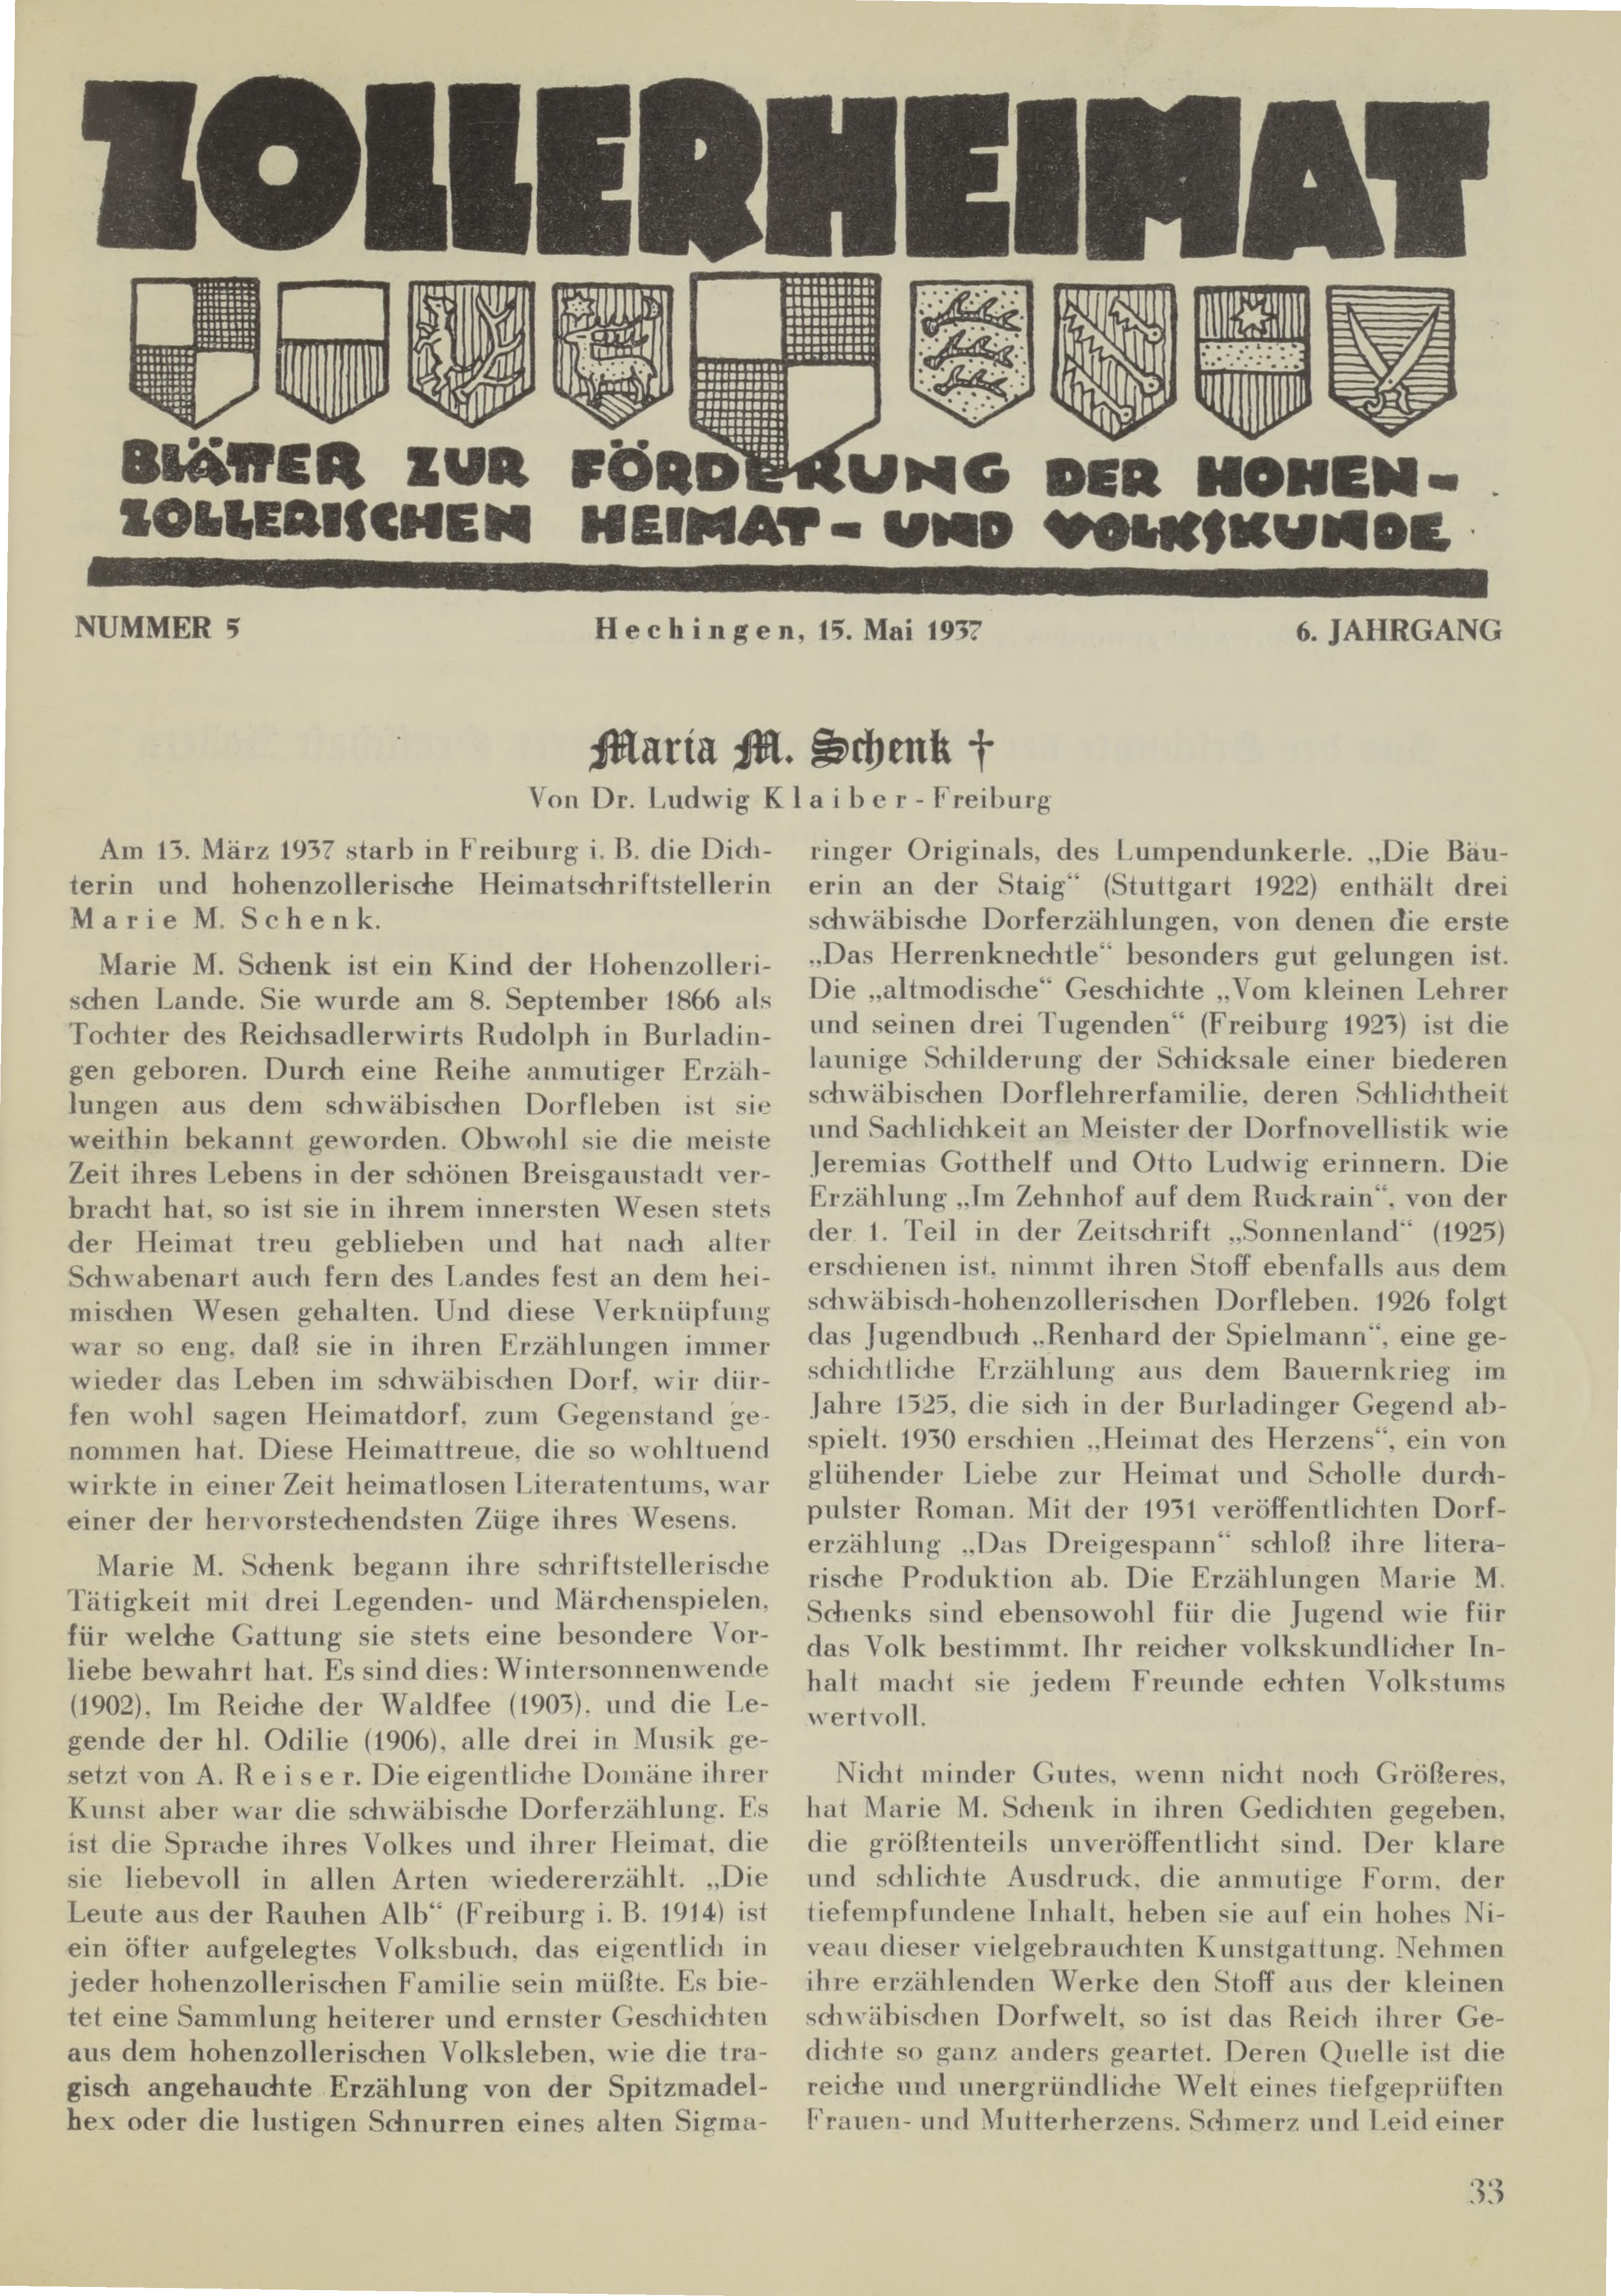                     Ansehen Bd. 6 Nr. 5 (1937): Zollerheimat
                